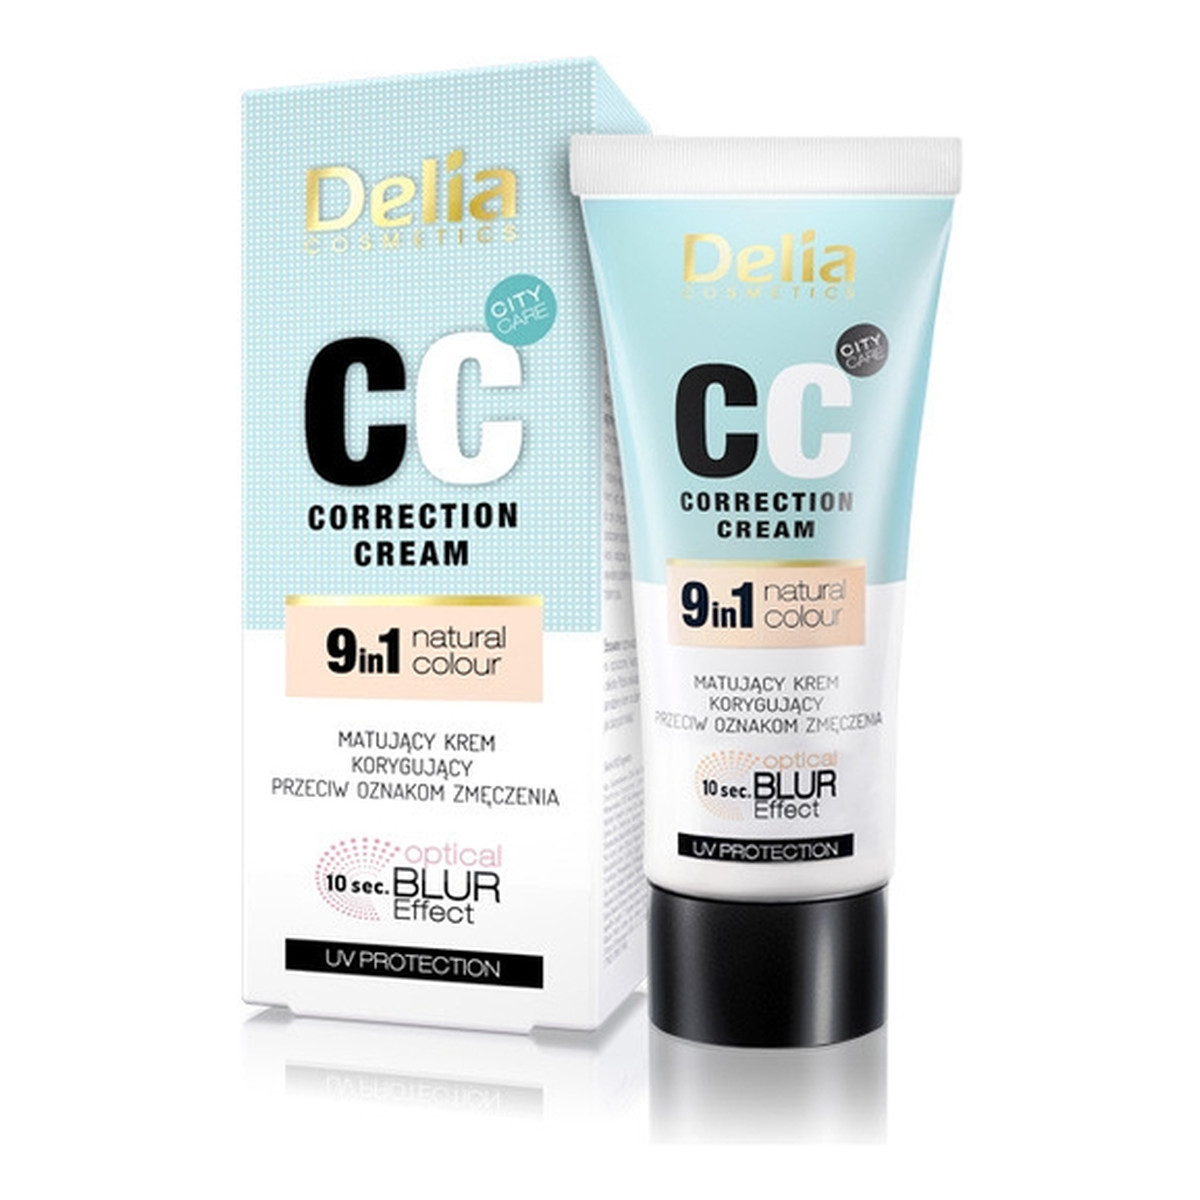 Delia Correction Cream 9 in 1 Natural Colour CC Matujący Krem Korygujacy Przeciw Oznakom Zmęczenia 30ml